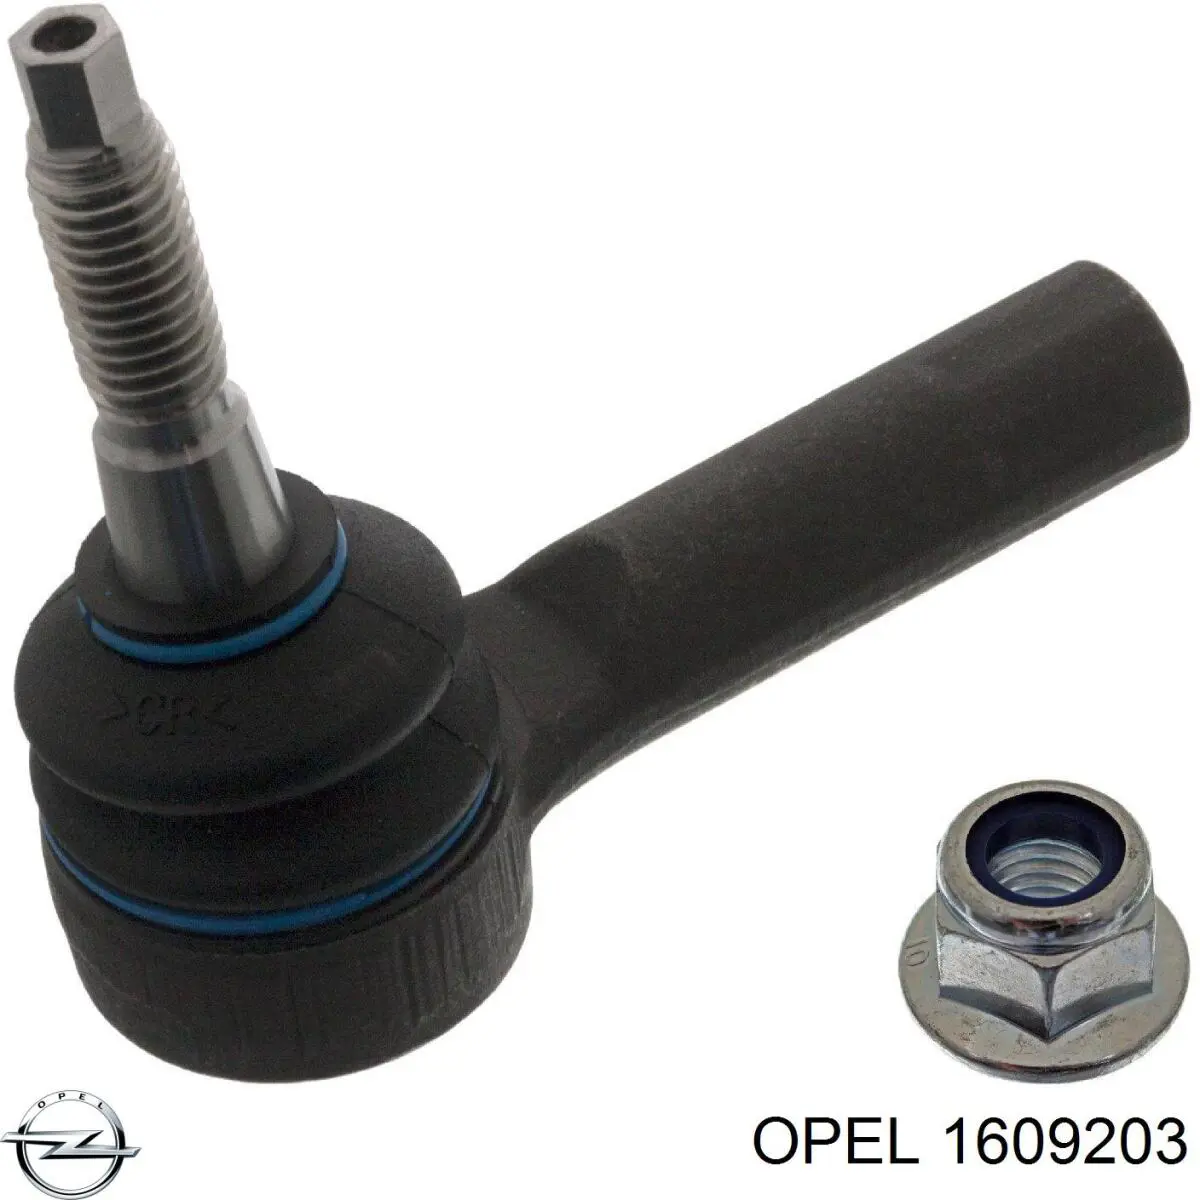 1609203 Opel ponta externa da barra de direção